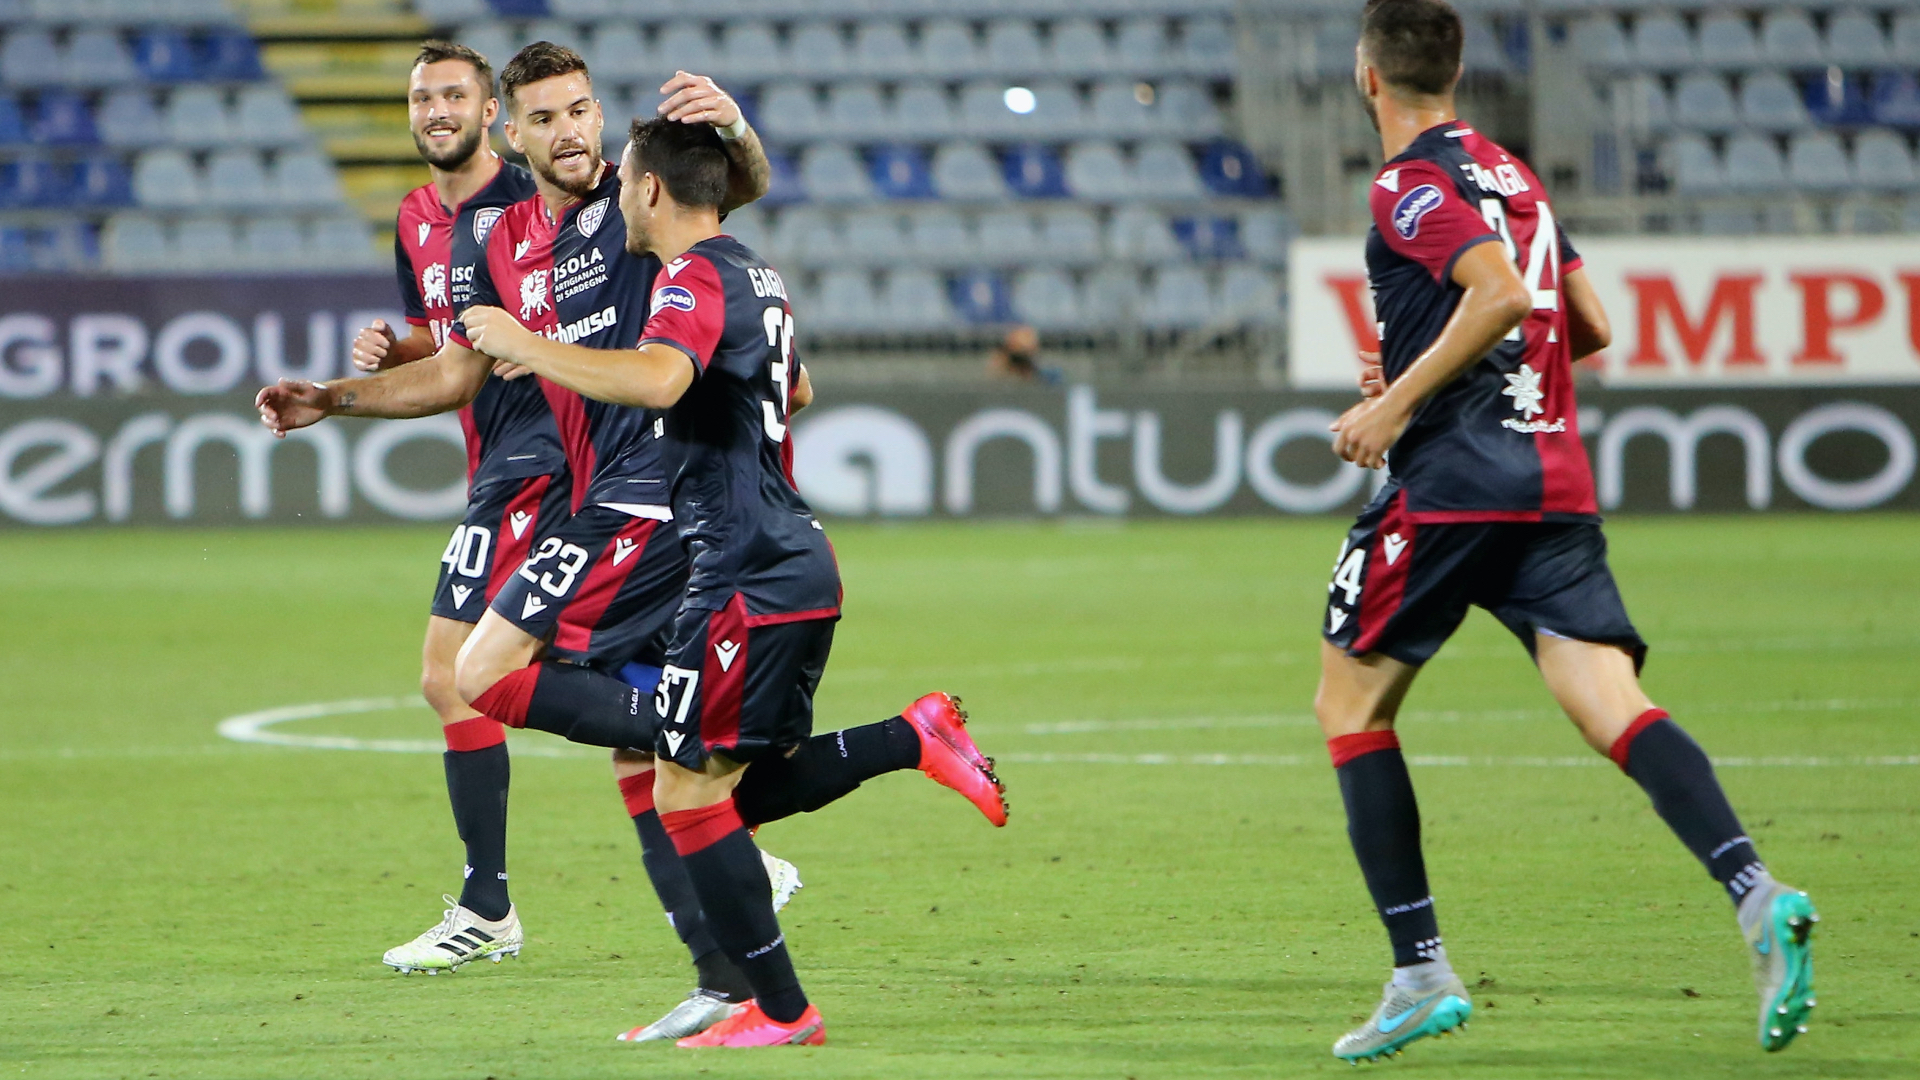 Cagliari - Juventus 2-0, déjà championne, la Juve chute à Cagliari